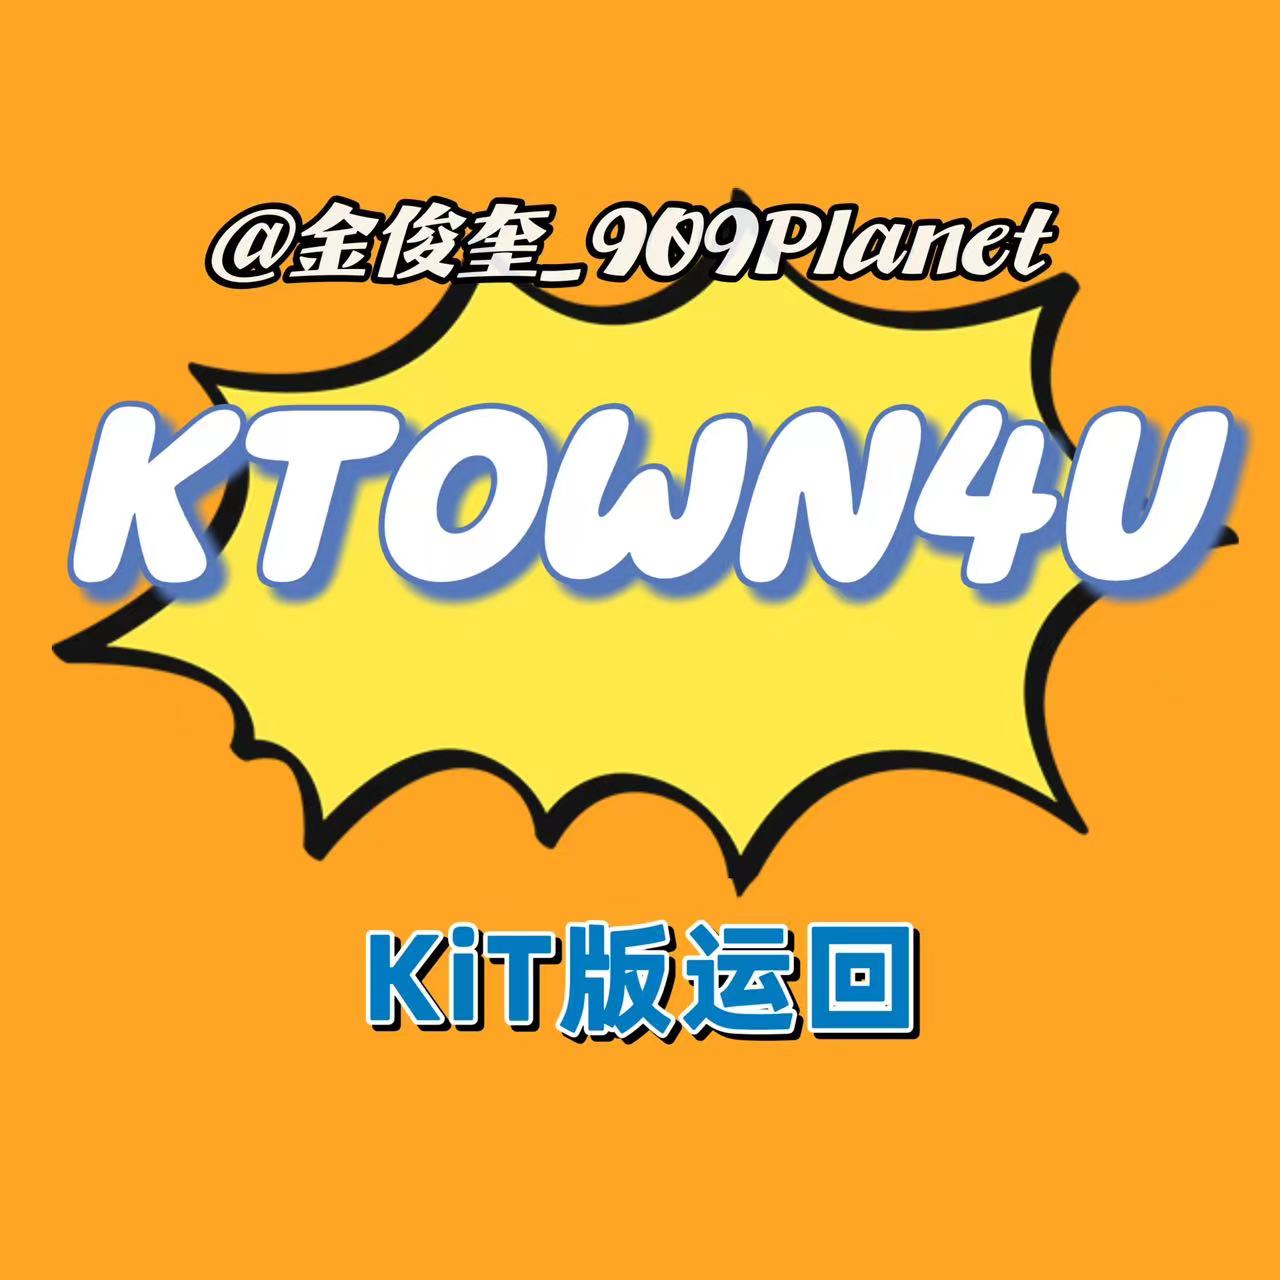 [全款 裸专] [Ktown4u Special Gift] TREASURE - 2ND FULL ALBUM [REBOOT] KiT ALBUM_金俊奎909Planet